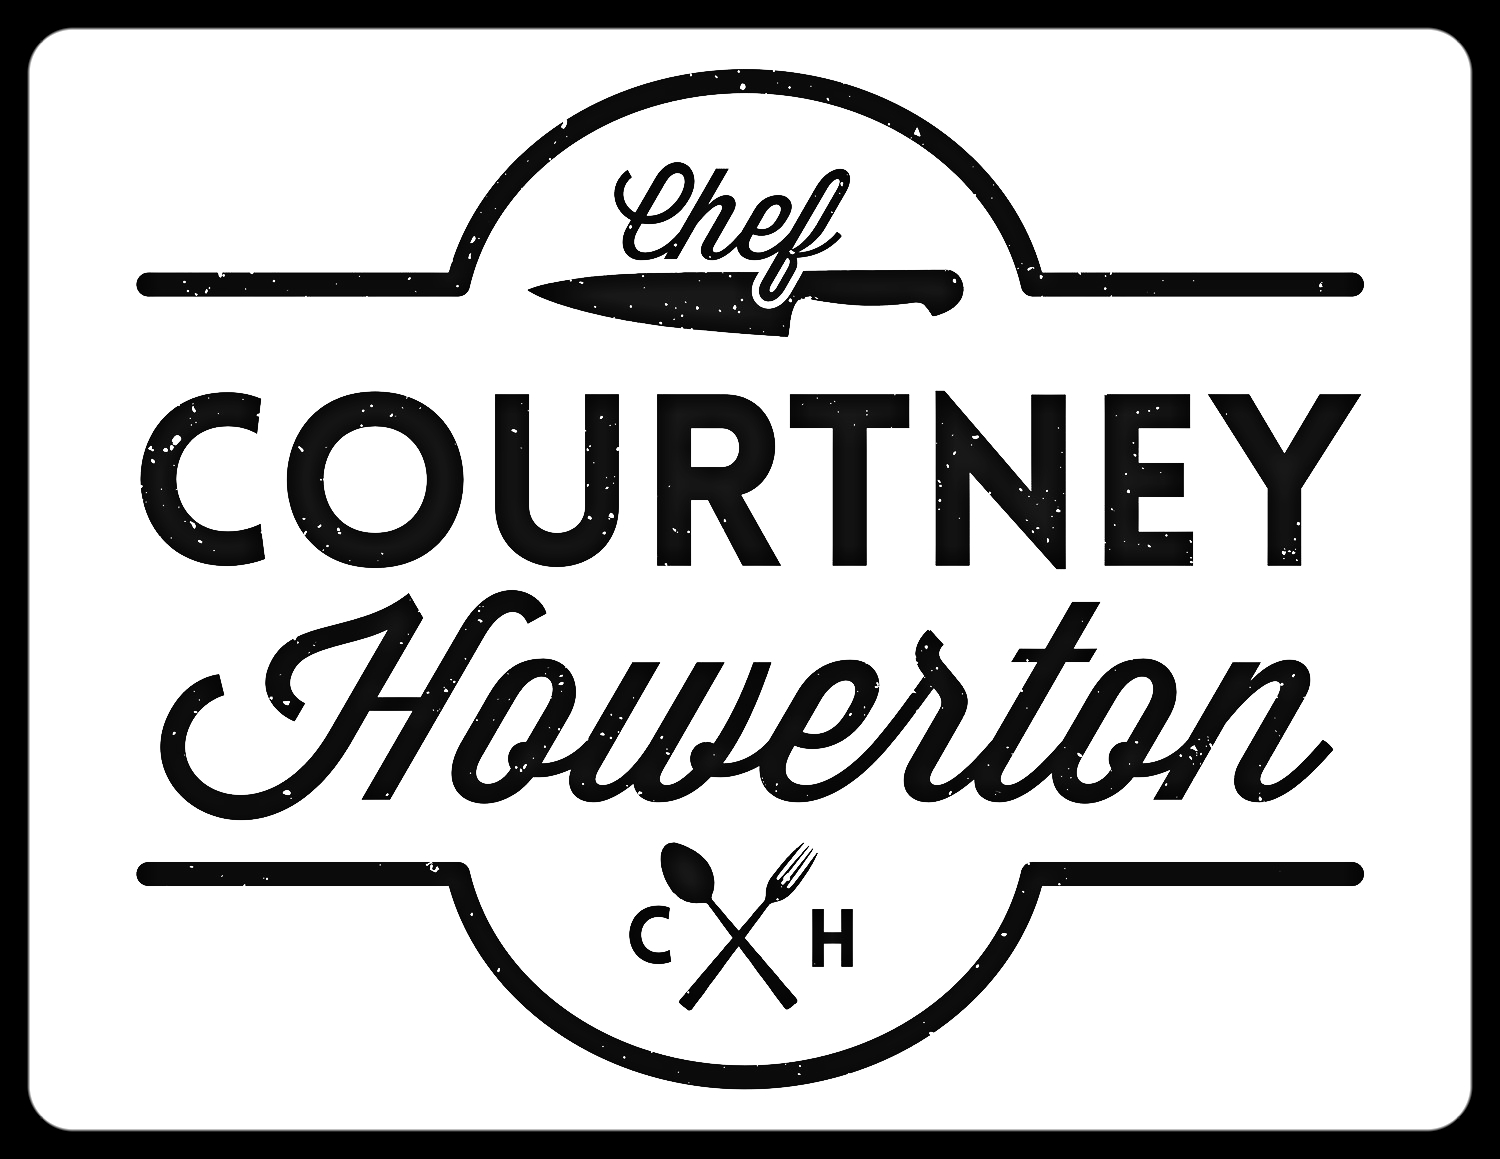 Chef Courtney Howerton